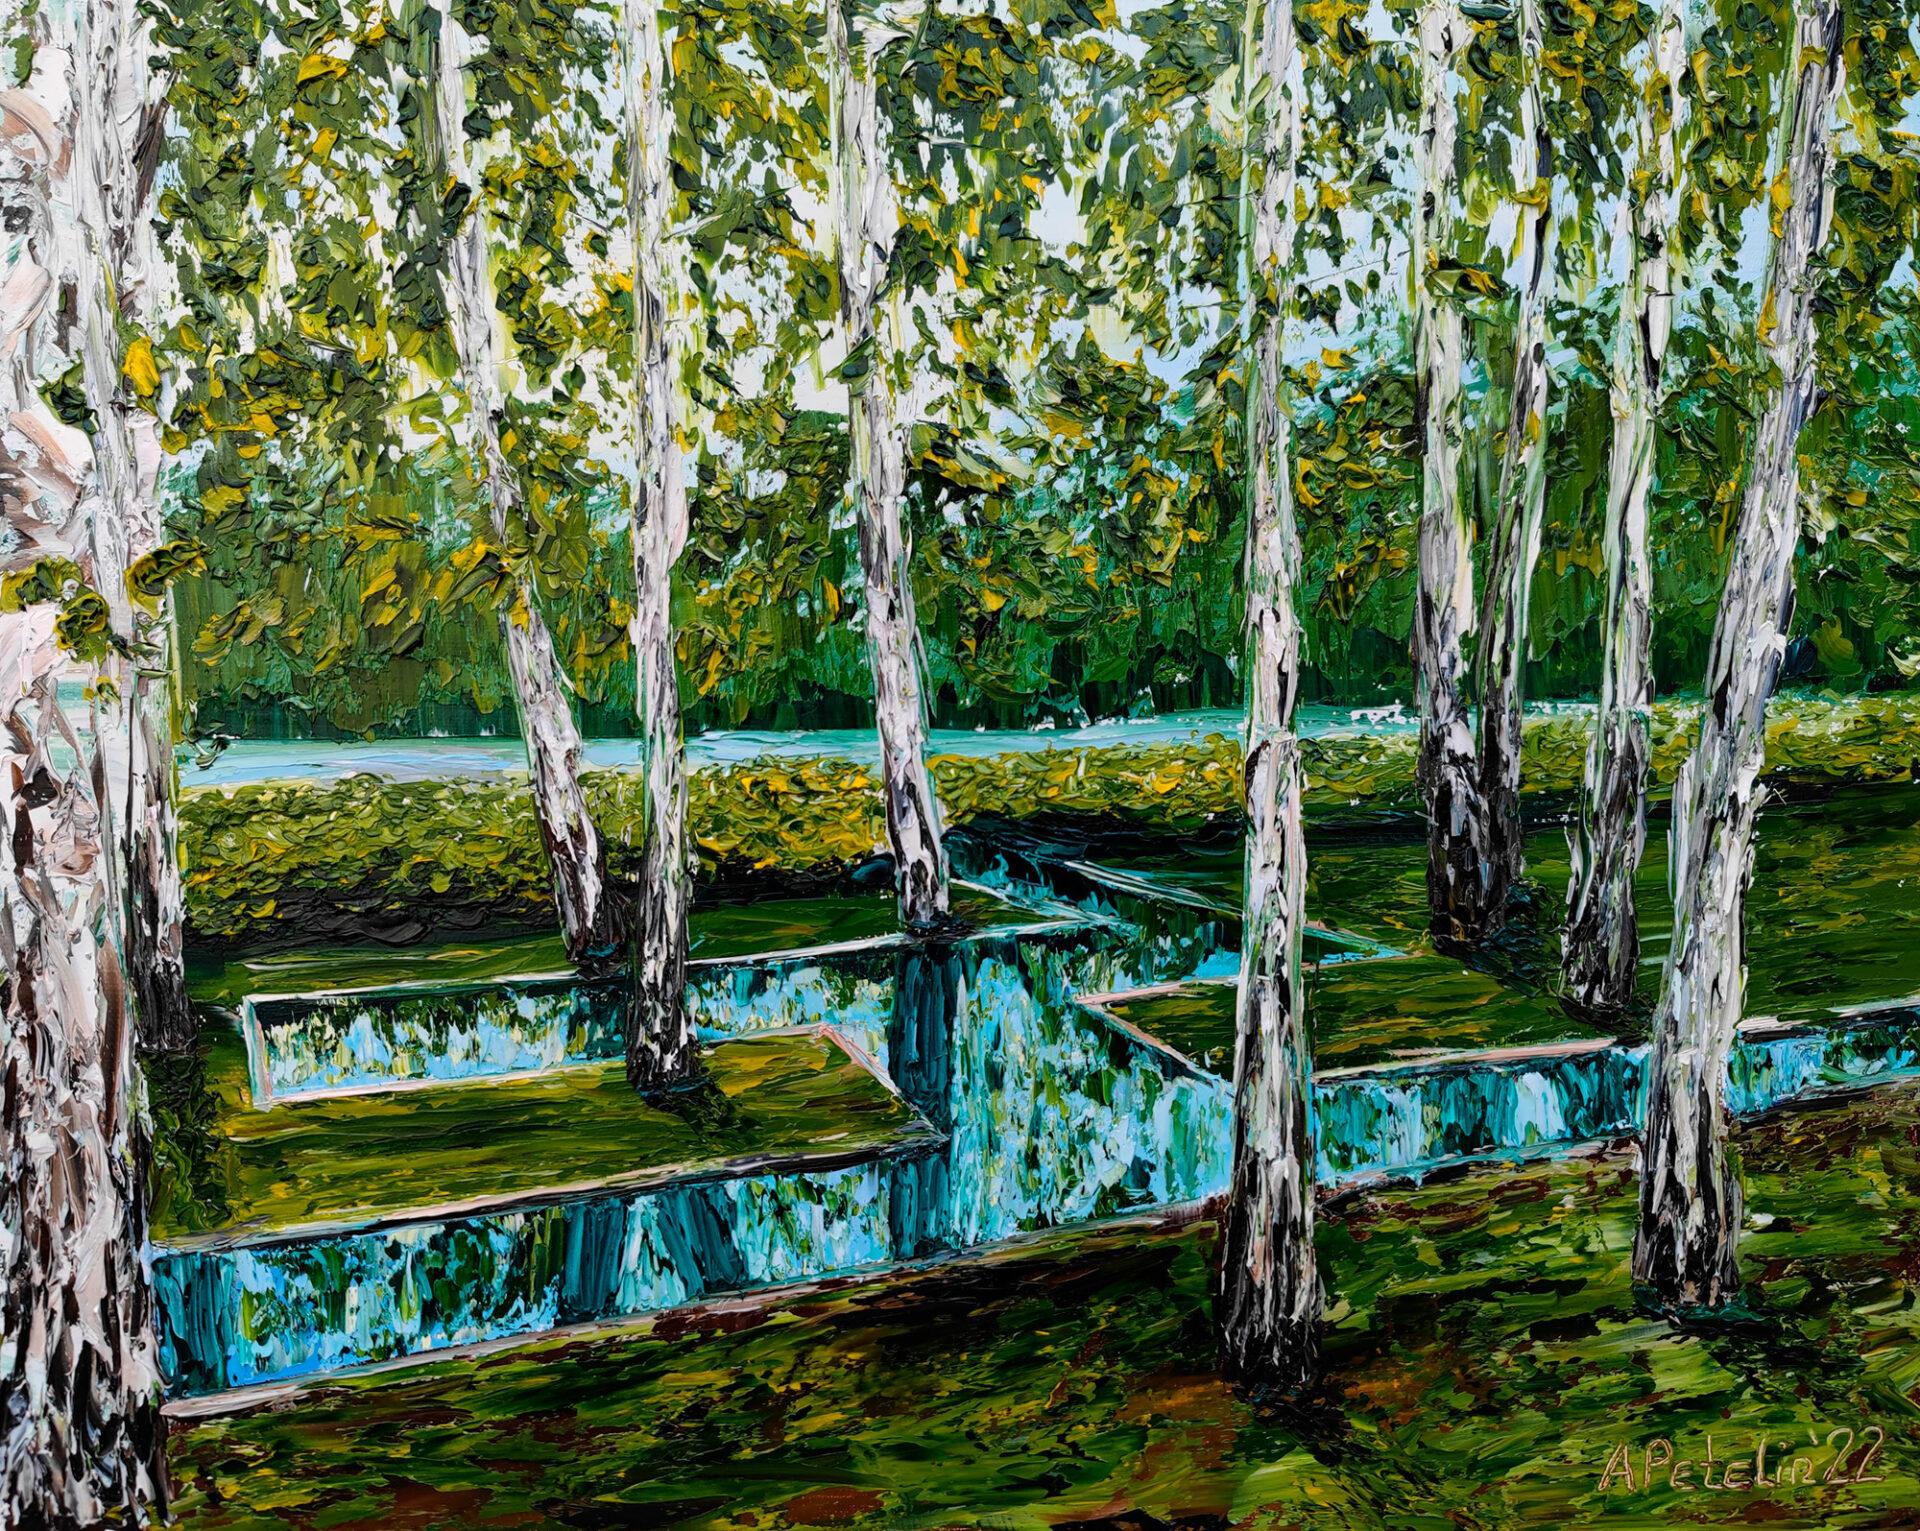 Aleksandr Petelin Landscape Painting - Birches. After rain